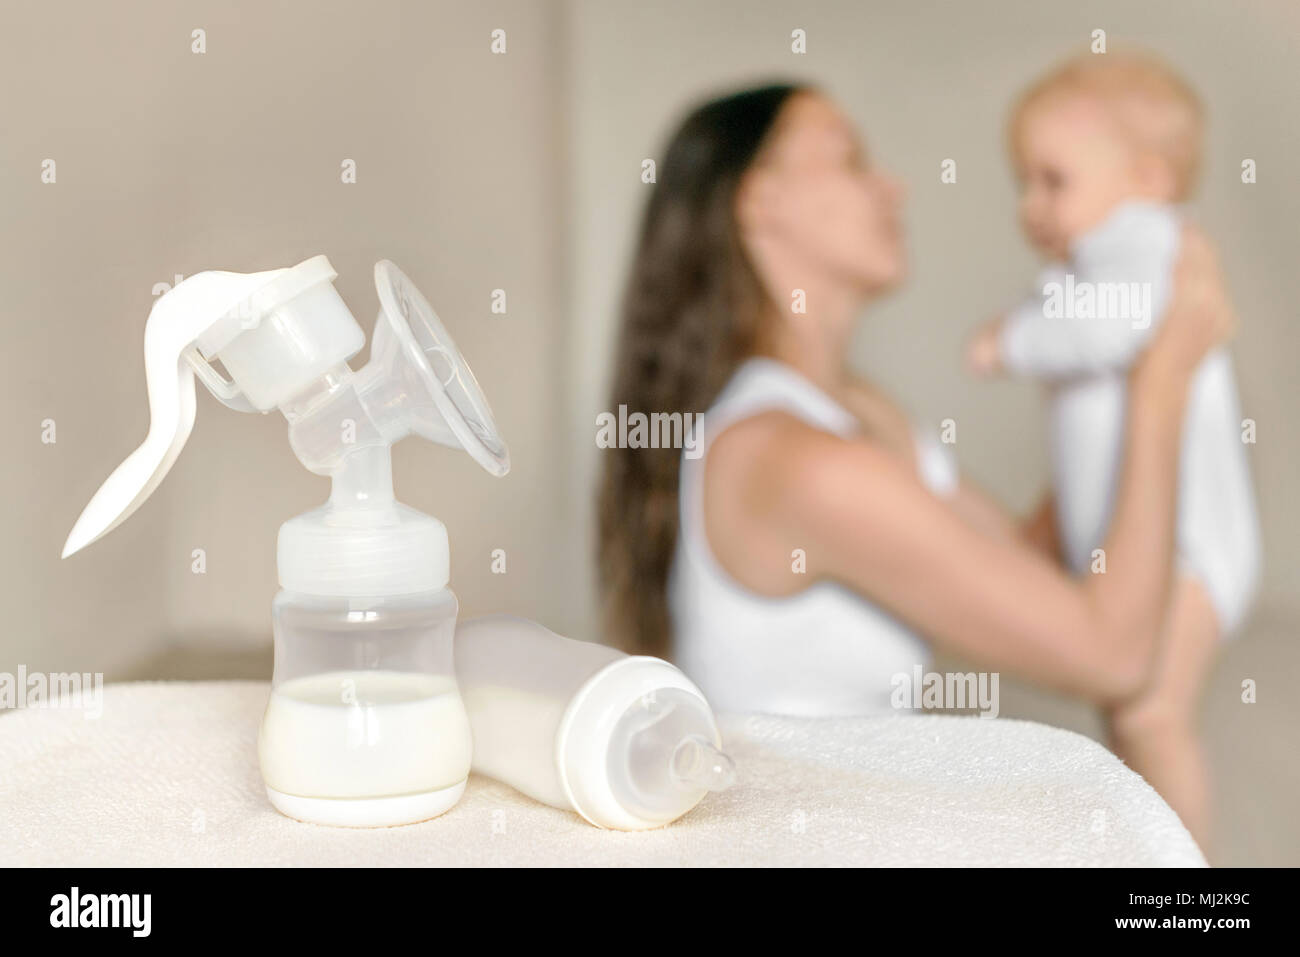 Tiralatte manuale e la bottiglia con il latte materno sullo sfondo della madre del bambino tiene nelle sue mani. La maternità e la cura del bambino. Foto Stock